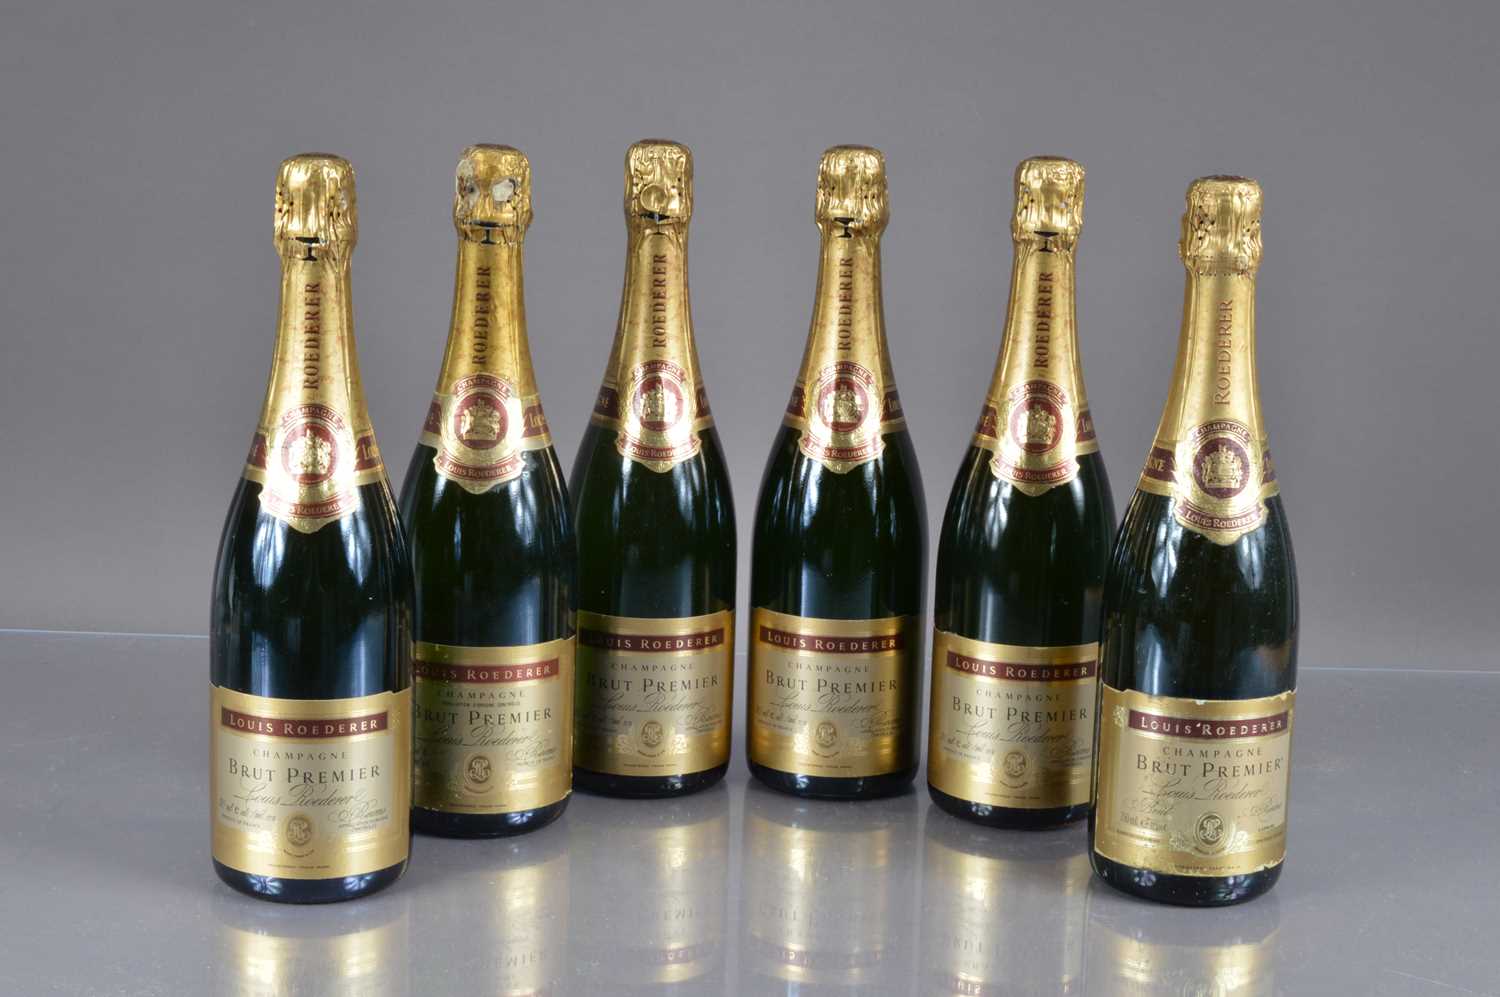 Six bottles of Louis Roederer 'Brut Premier' Champagne, - Image 2 of 3